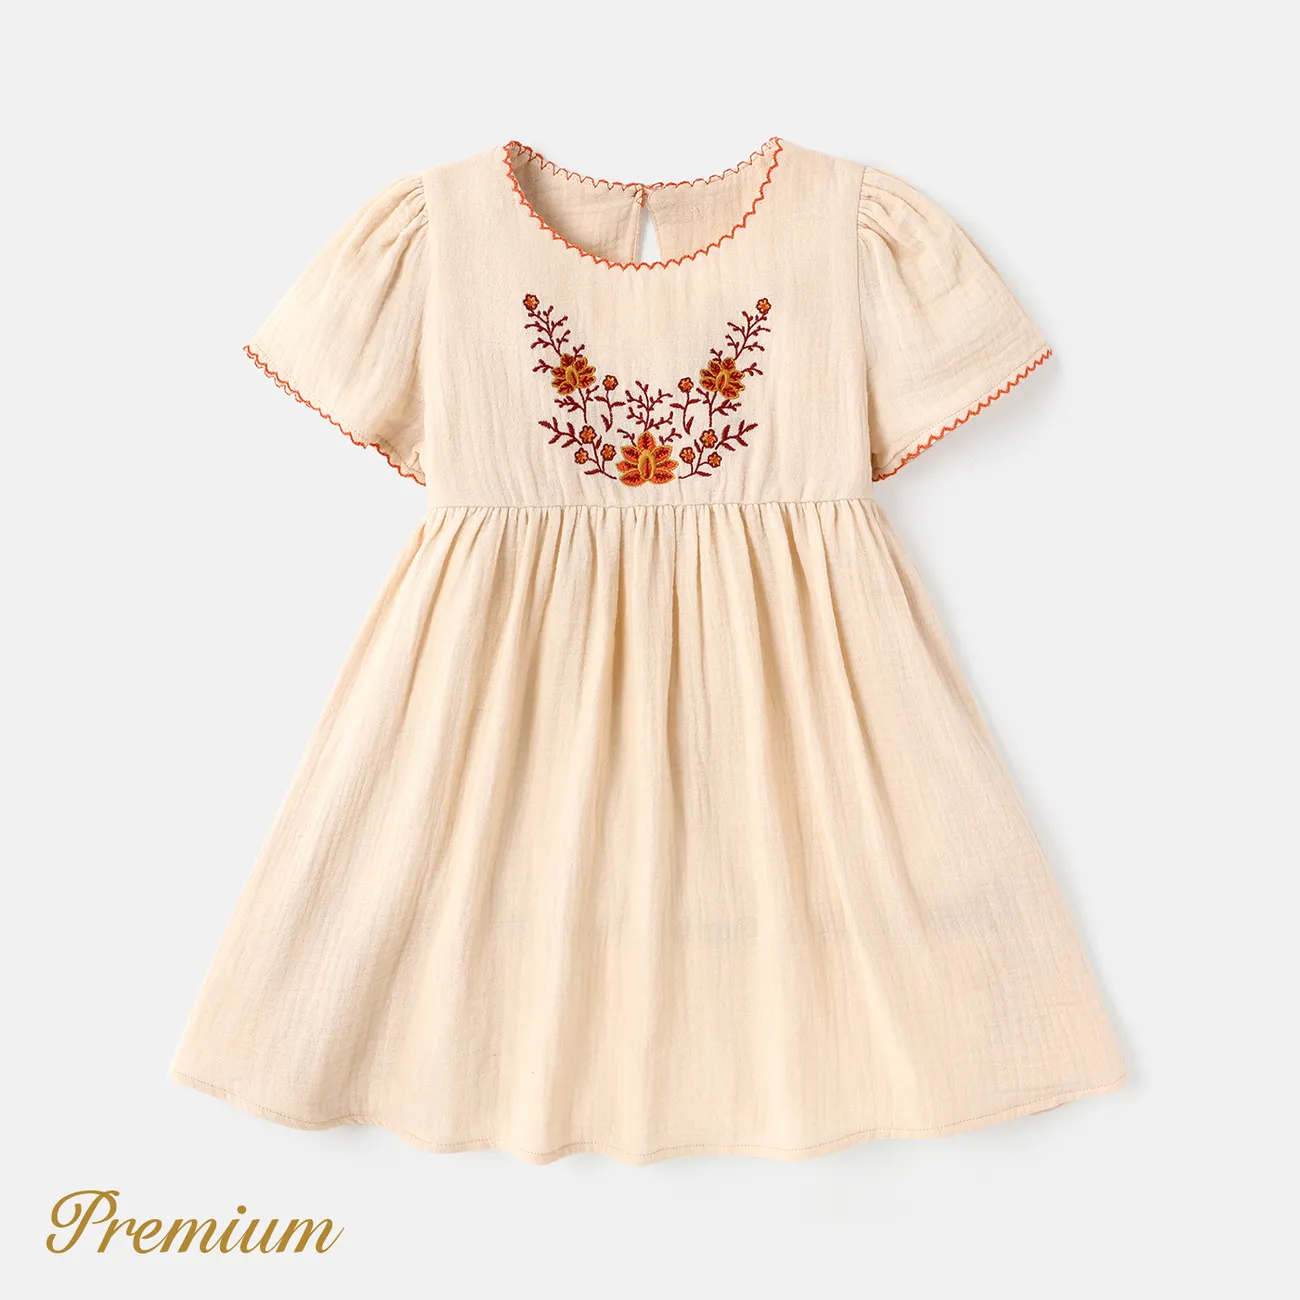 Toddler Girl 100% Cotton Floral Print Short-sleeve Dress  big image 1